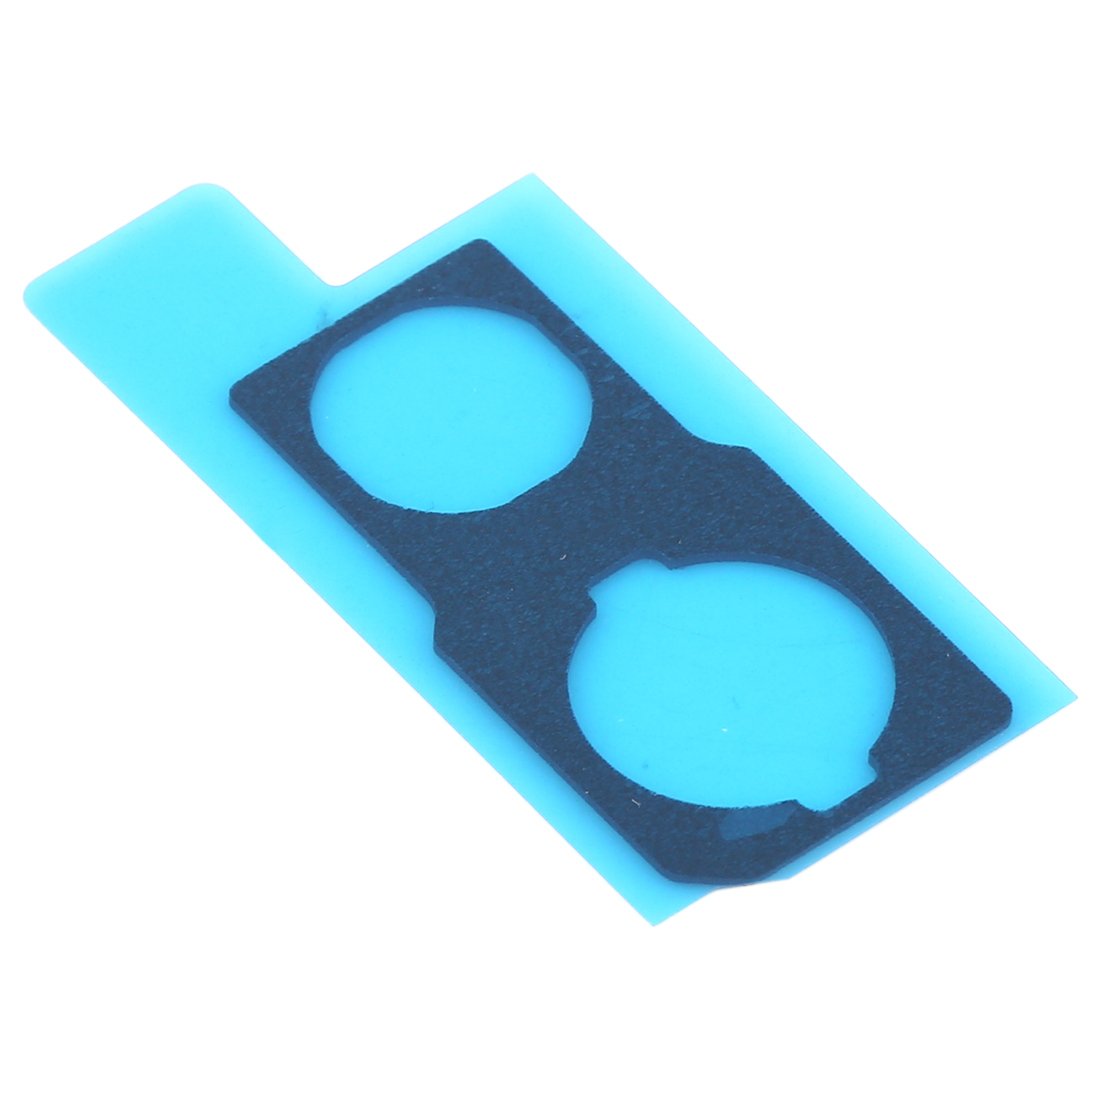 10 PCS Back Camera Dustproof Sponge Foam Pads for iPhone 11